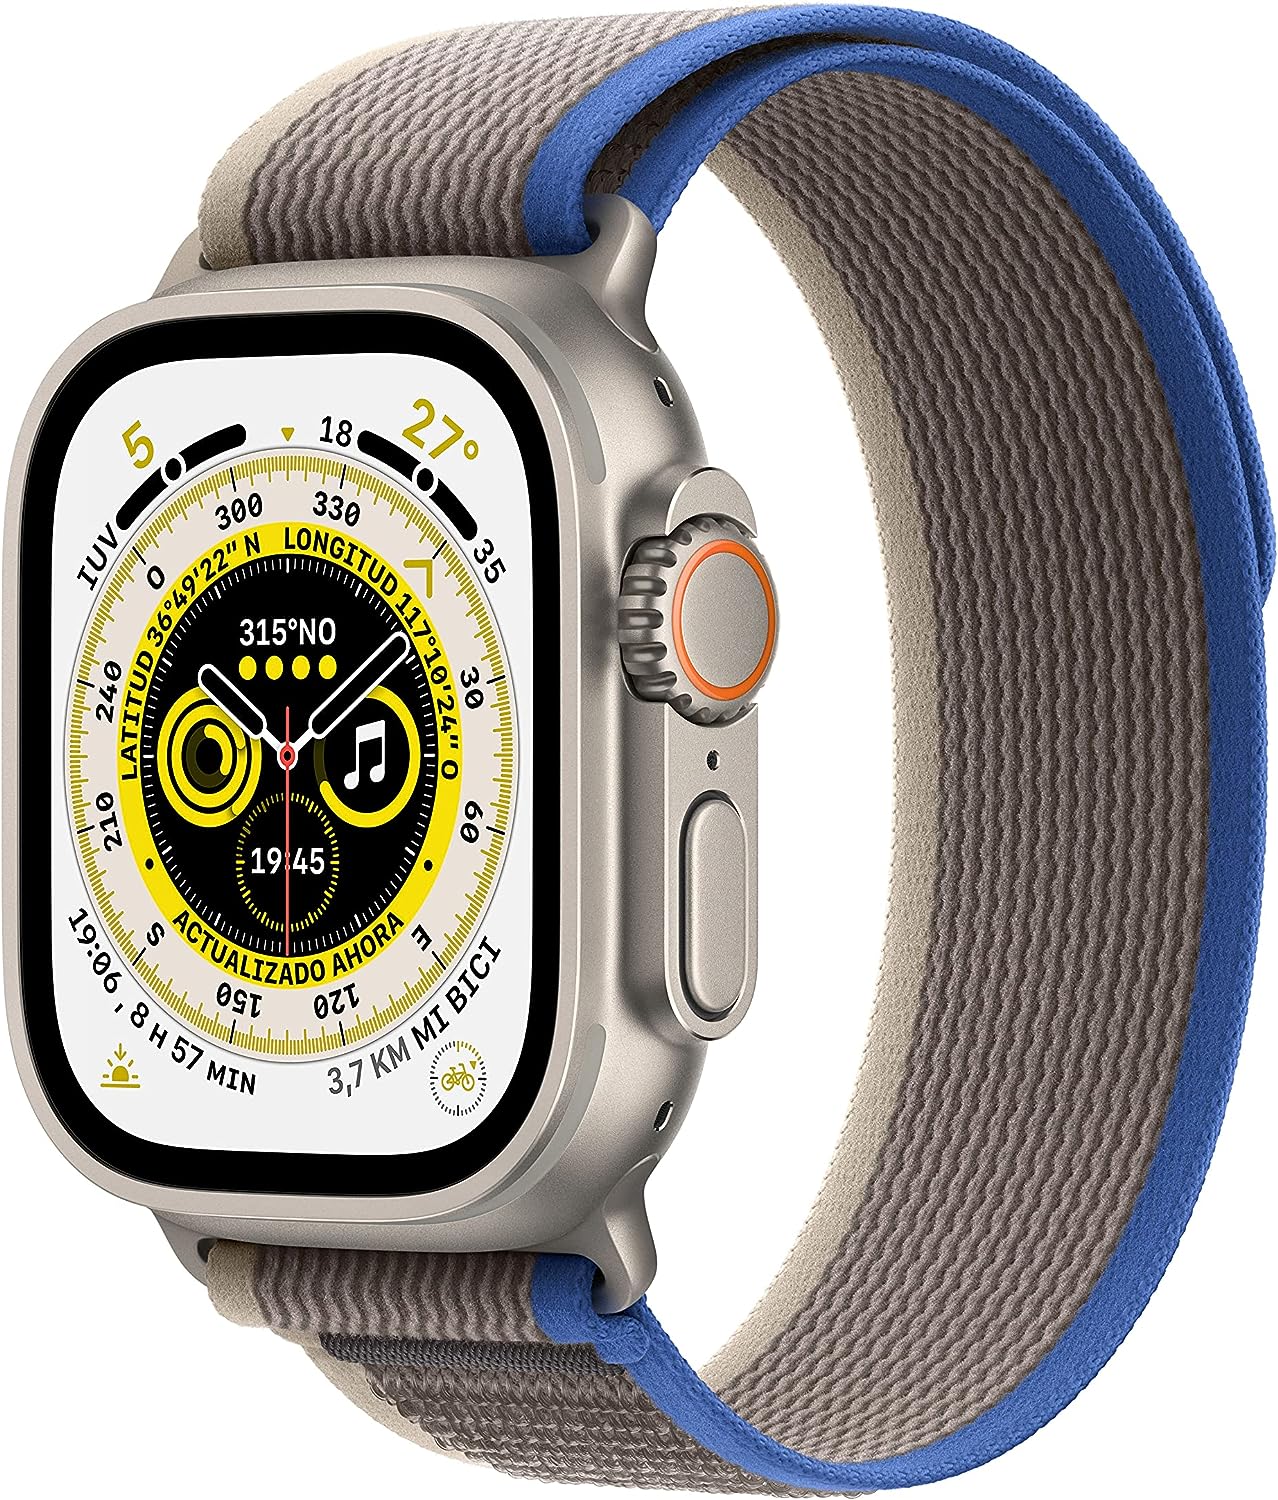 chollo Apple Watch Ultra (GPS + Cellular, 49mm) Reloj Inteligente con Caja de Titanio - Correa Loop Trail Azul/Gris - Talla S/M. Monitor de entreno, GPS de Alta precisión, autonomía Extraordinaria